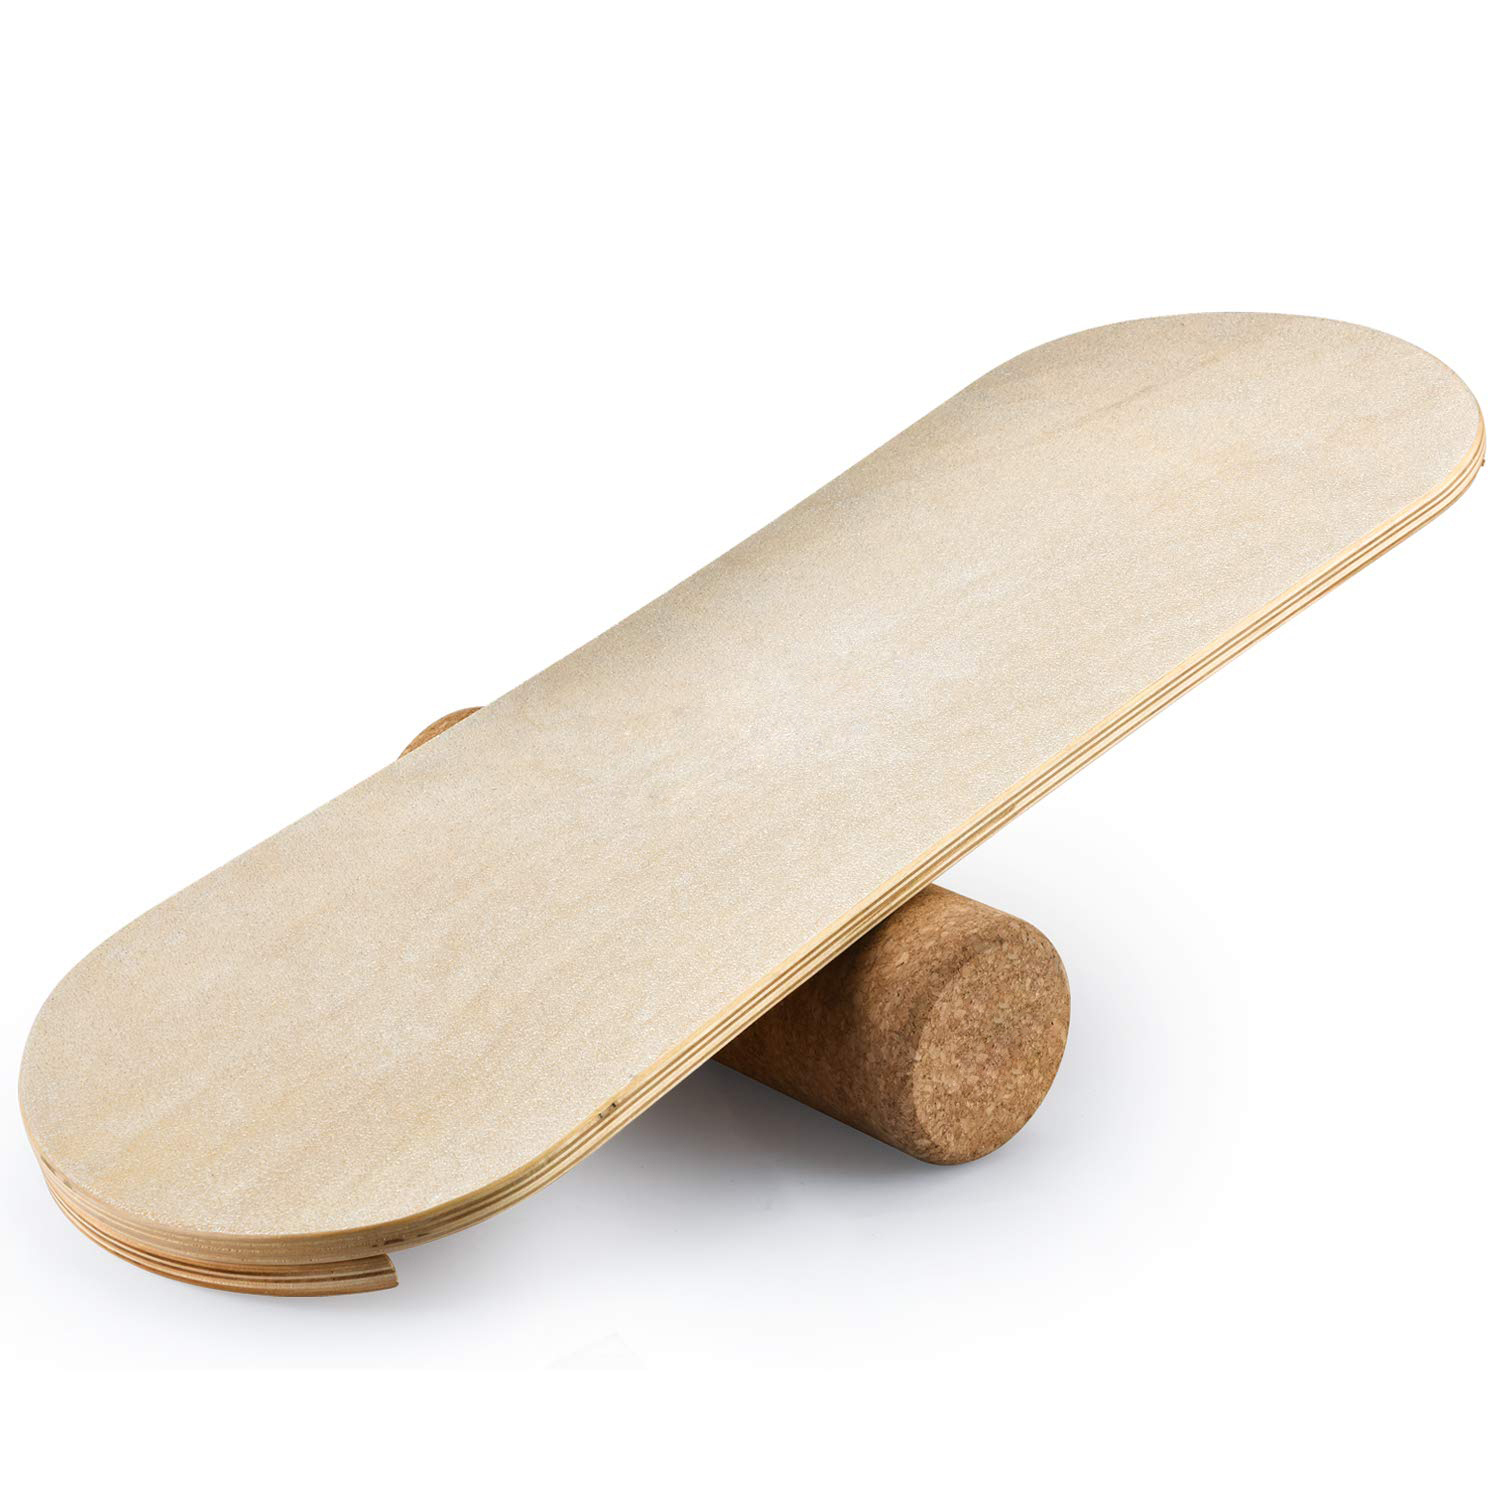 BB-P2 Skateboard Balance Board for Adults Training (2)